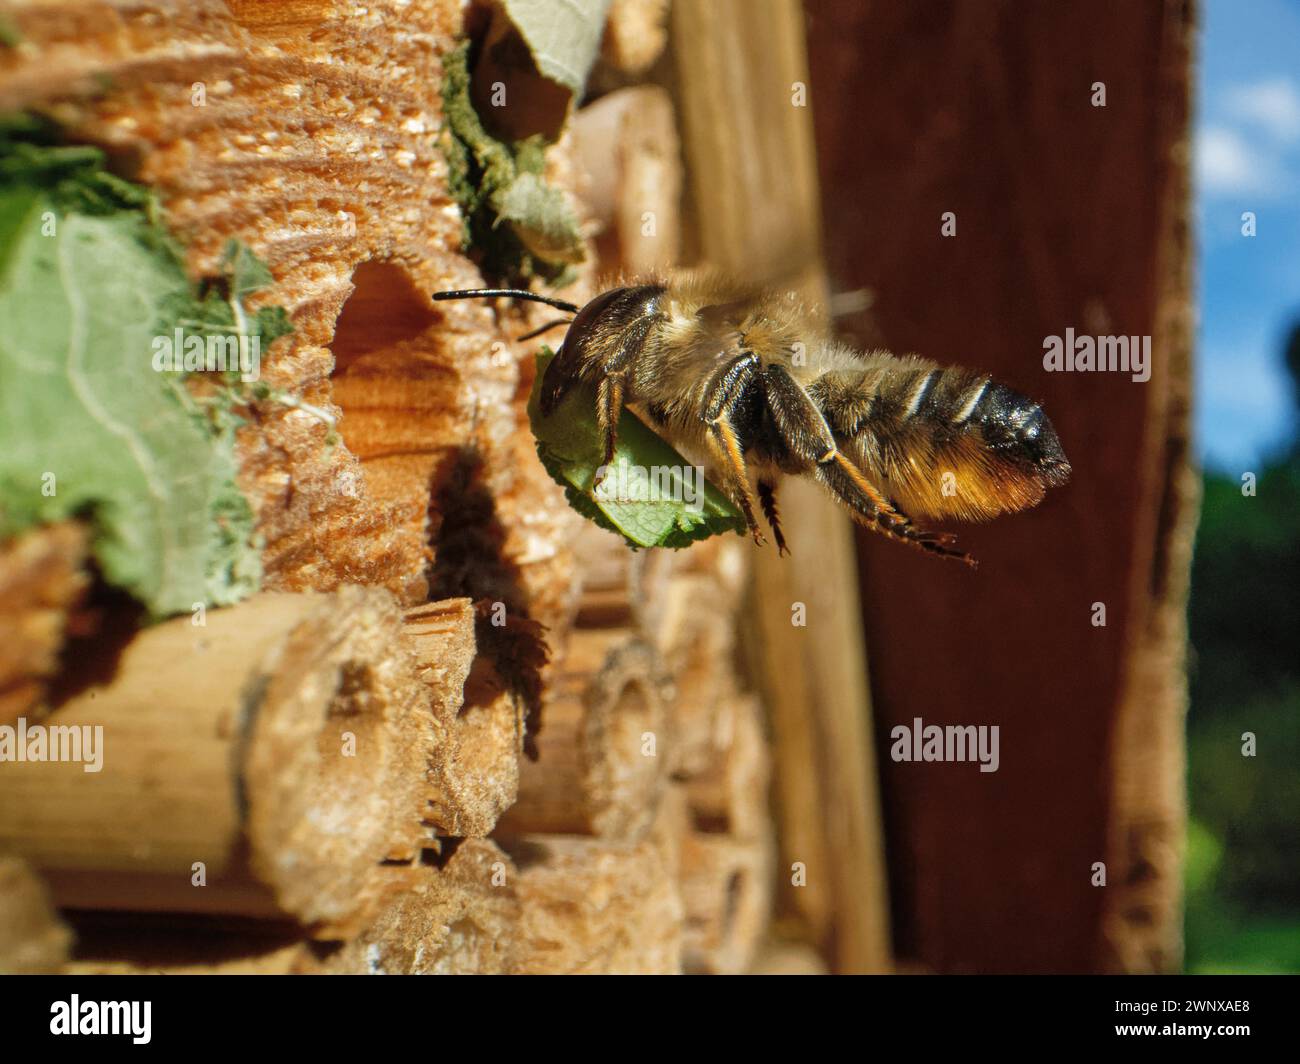 Megalachile ligniseca, un taglialegna intagliata in legno, che vola verso un hotel di insetti con una foglia per sigillare il nido in un buco praticato, Wiltshire, Regno Unito. Foto Stock